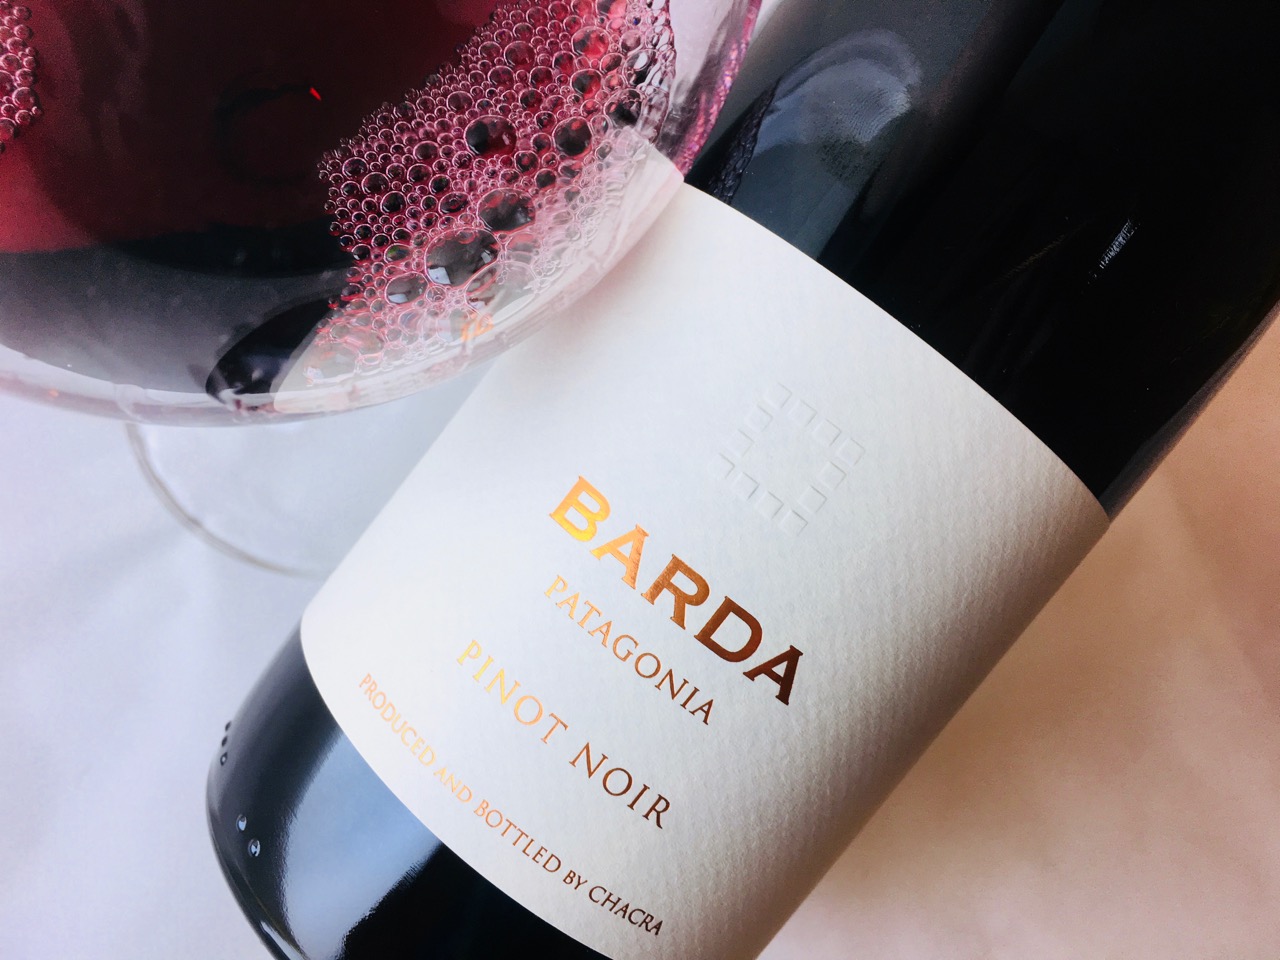 2017 Bodega Barda Pinot Noir – Terroir Review